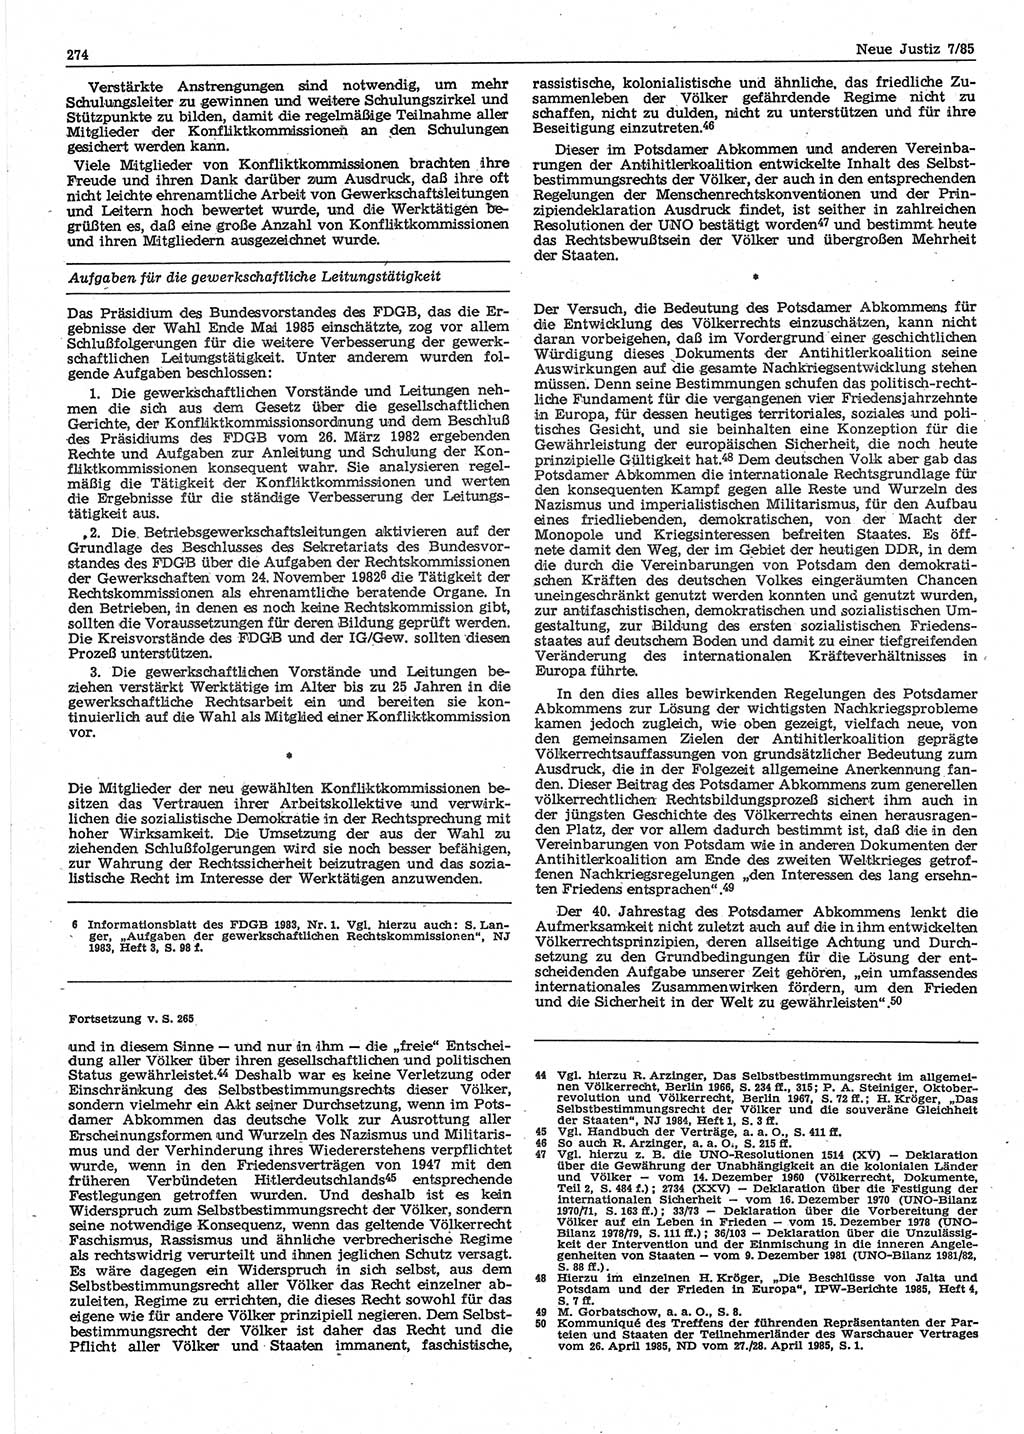 Neue Justiz (NJ), Zeitschrift für sozialistisches Recht und Gesetzlichkeit [Deutsche Demokratische Republik (DDR)], 39. Jahrgang 1985, Seite 274 (NJ DDR 1985, S. 274)